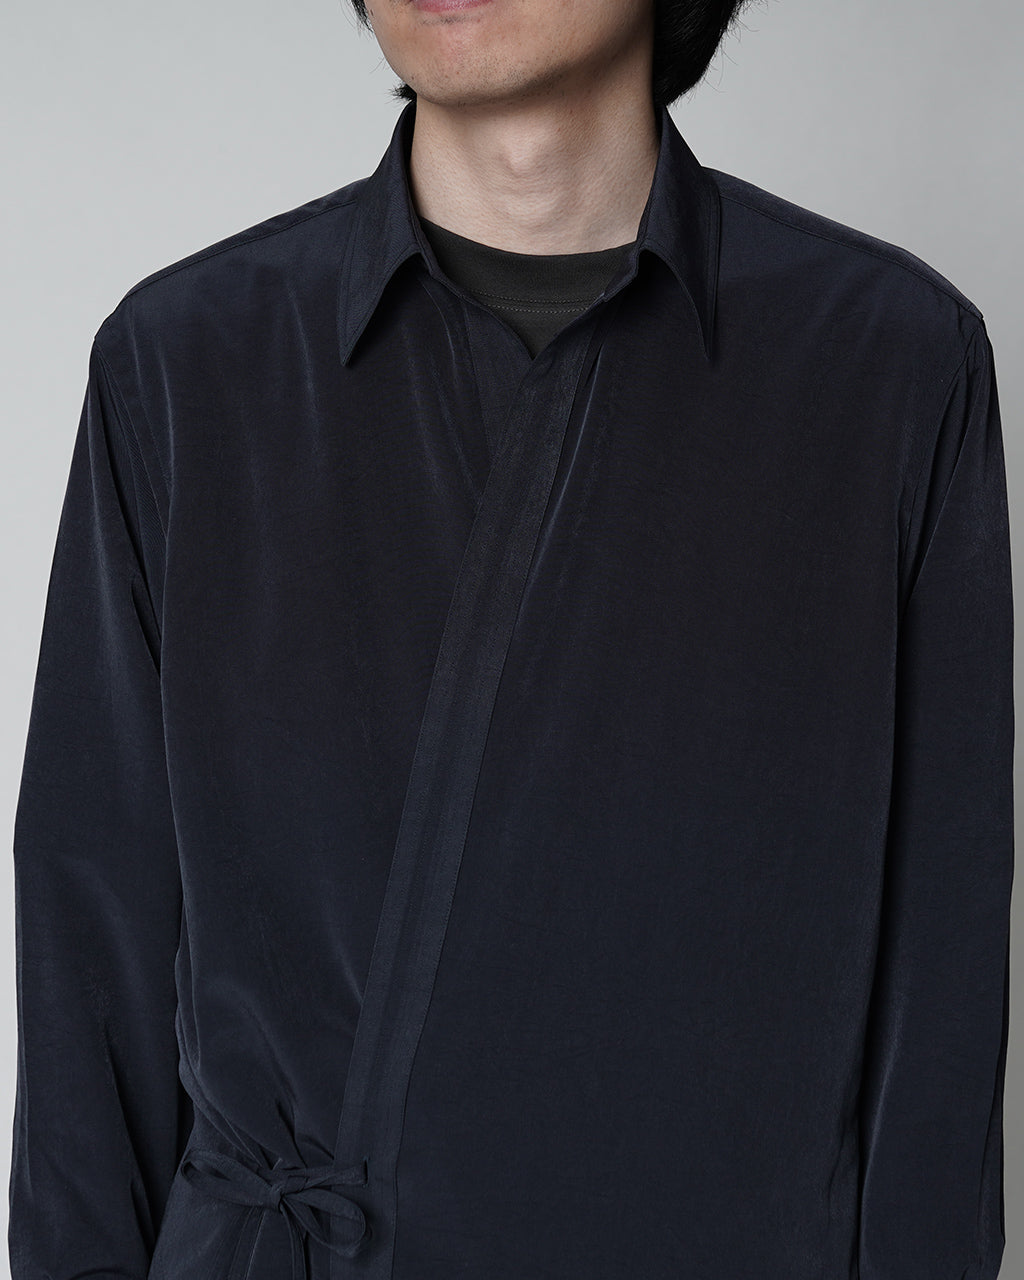 RAINMAKER レインメーカー ドウギシャツ DOUGI SHIRT メンズ RM241-021 